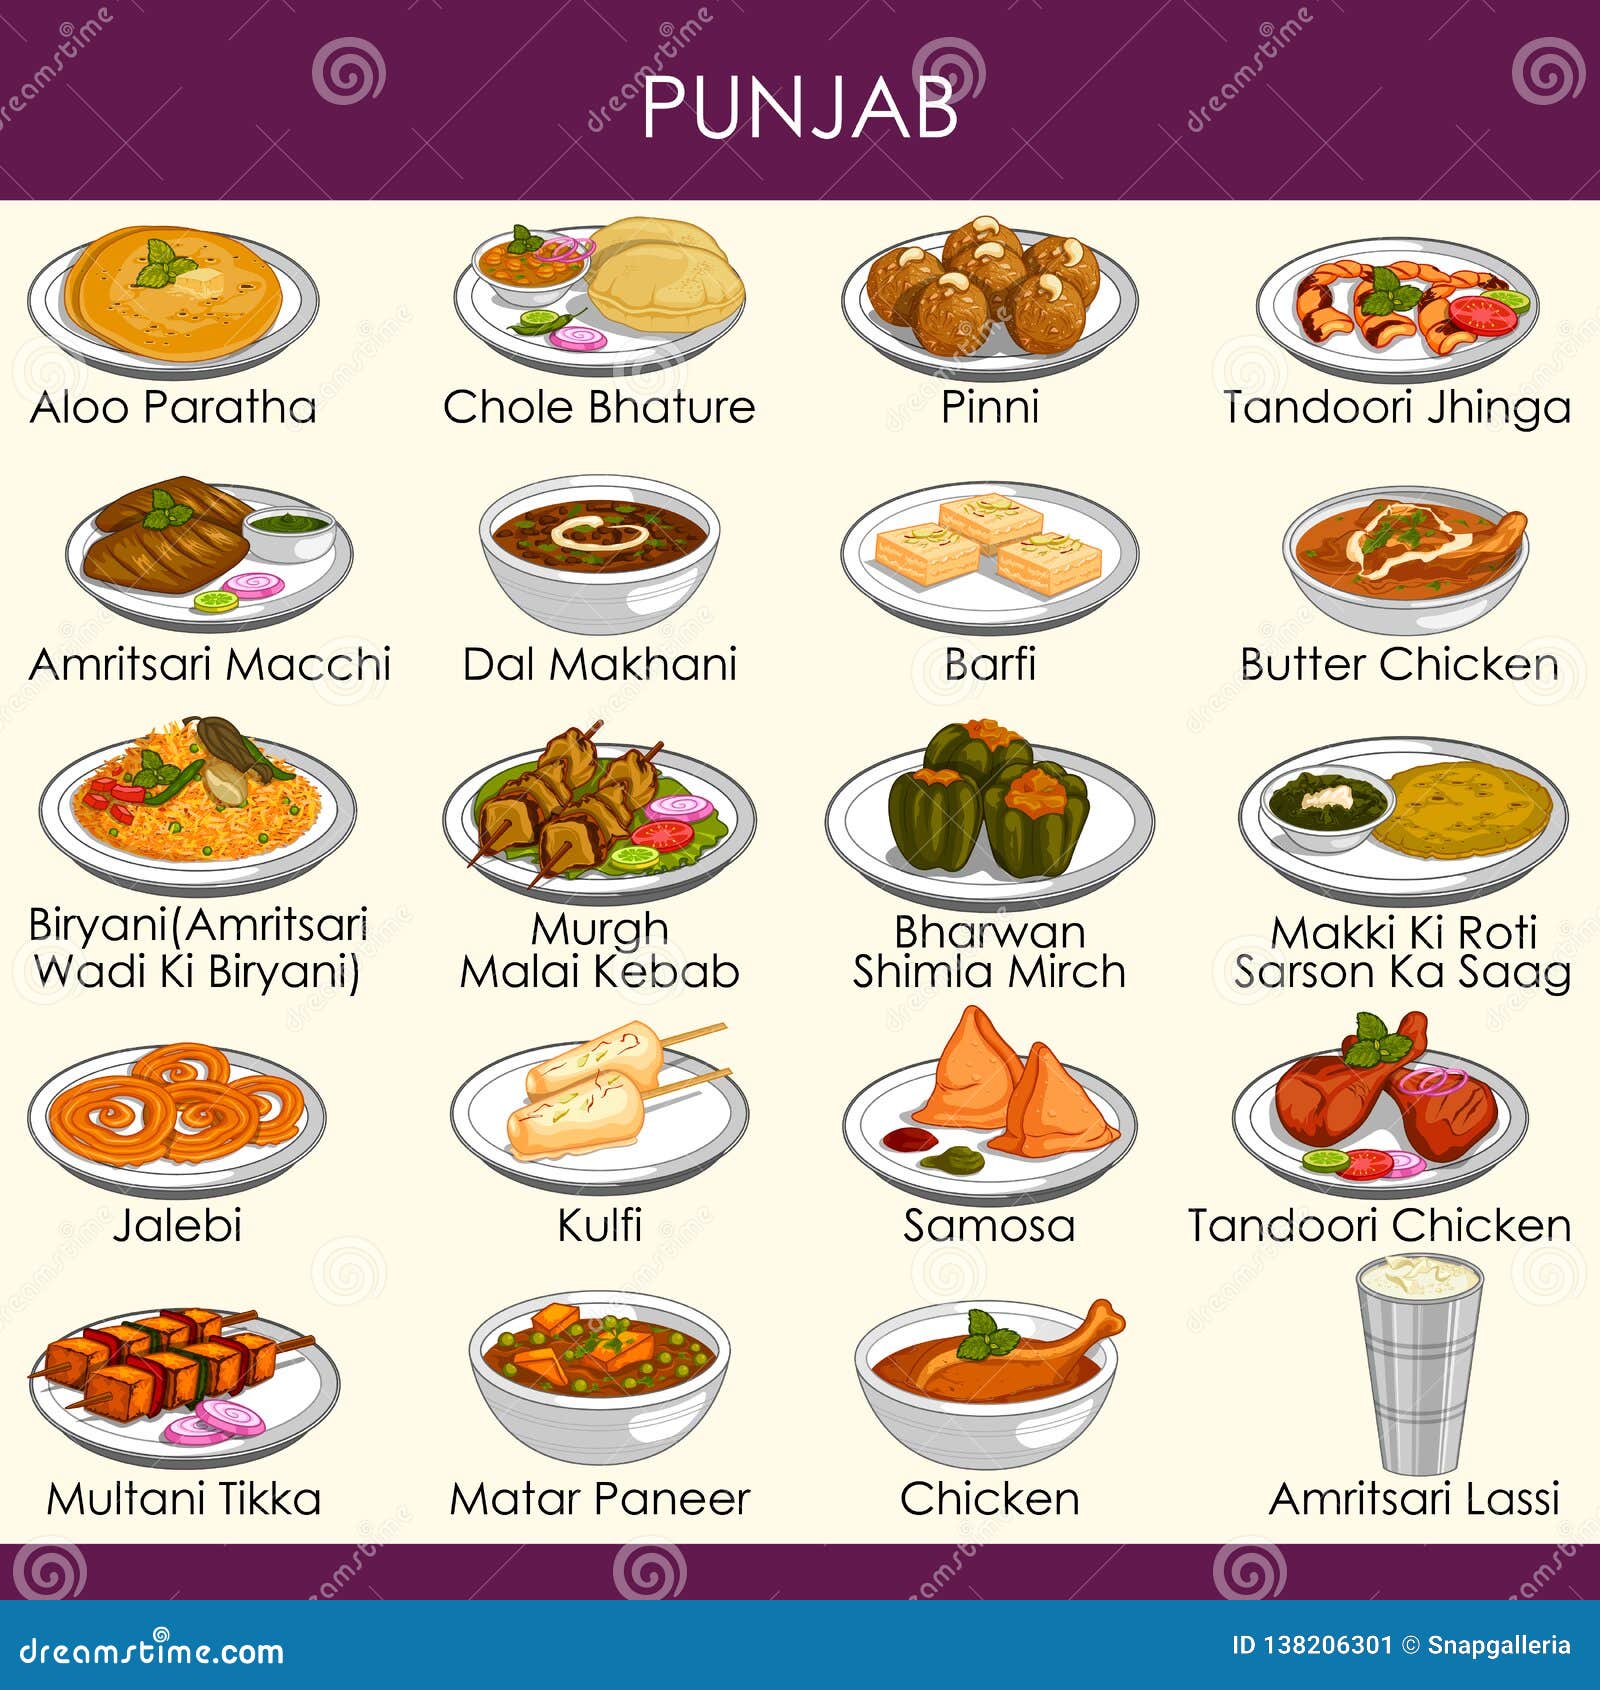 Punjabi Culture Food